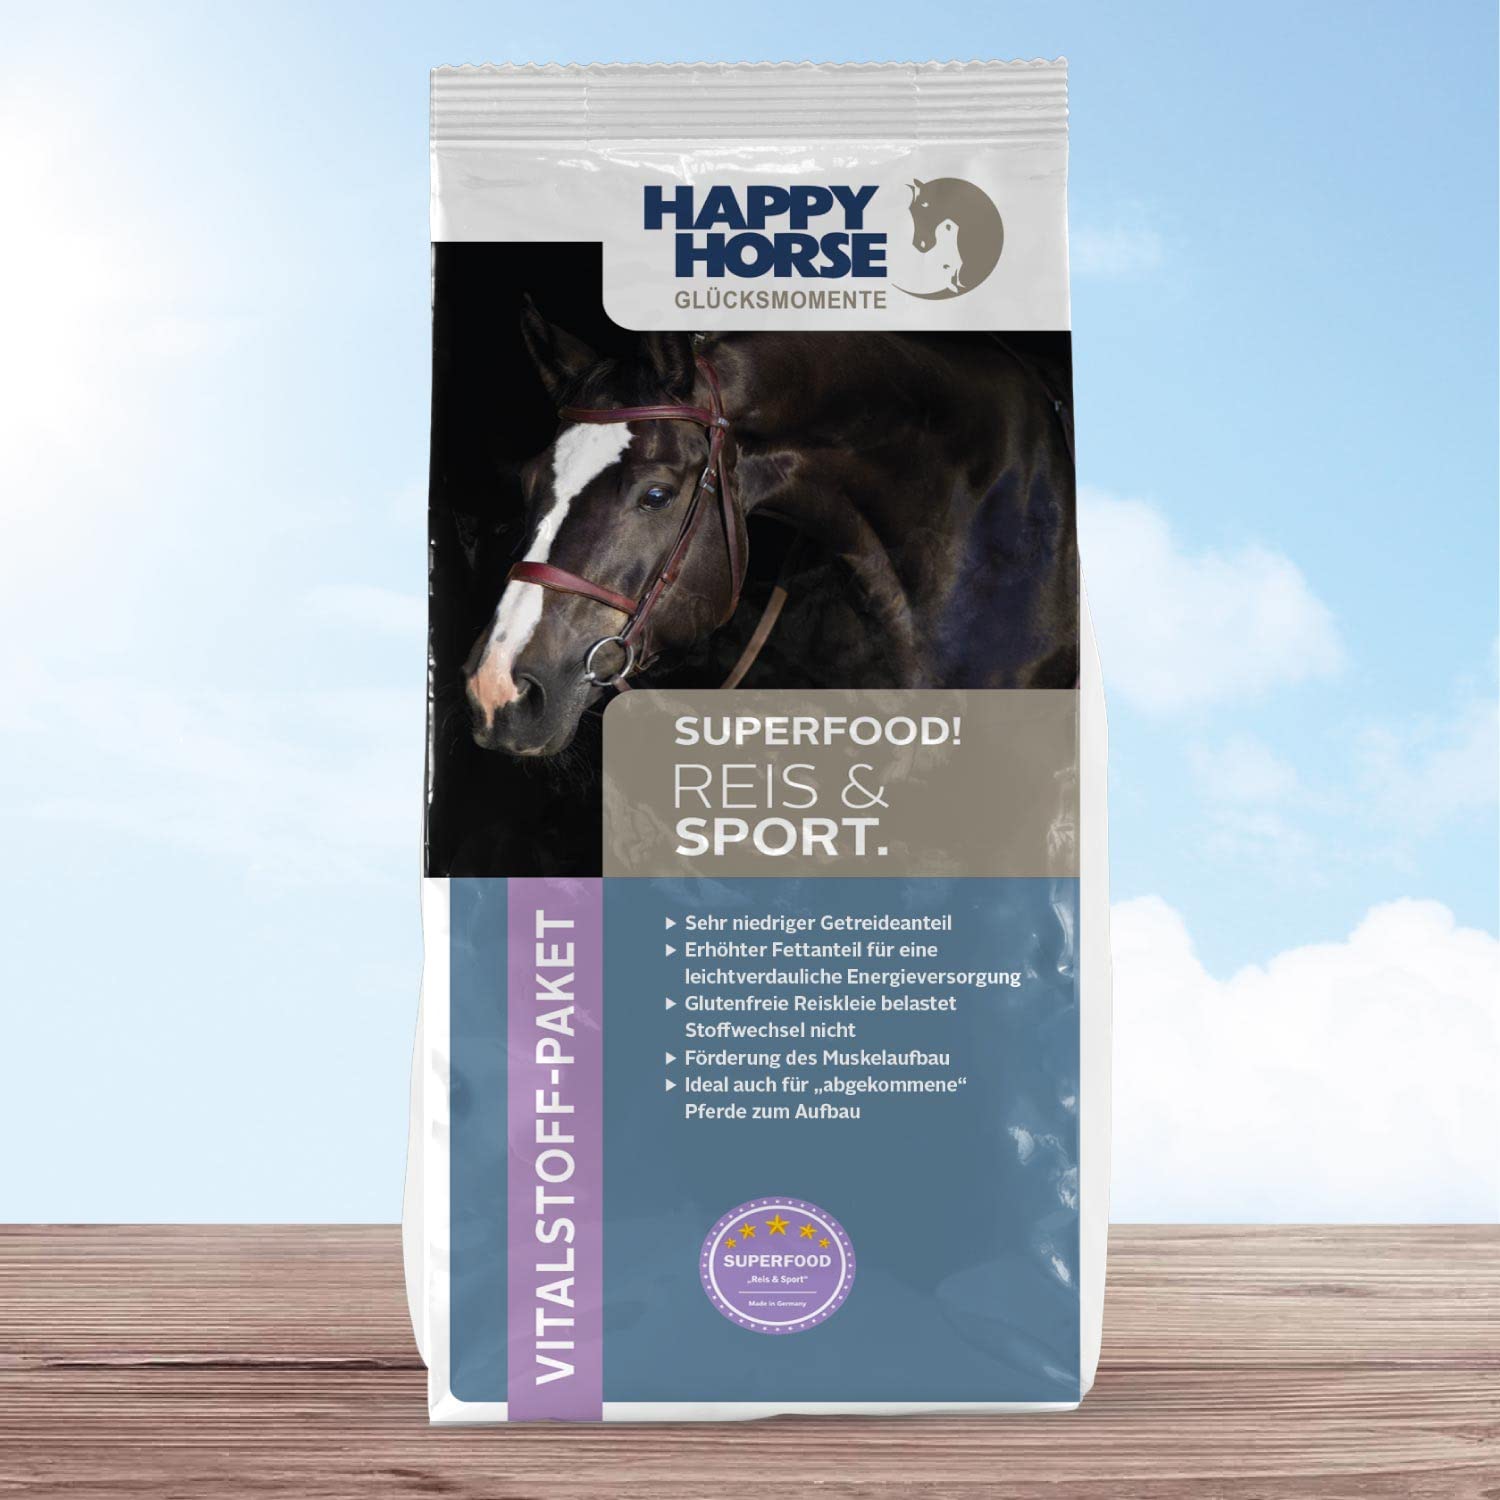 HAPPY HORSE Superfood Reis & Sport Pferdefutter 14kg - Vitalstoffversorger der neuen Generation - Sehr niedriger Getreideanteil - Glutenfreie Reiskleie - Förderung des Muskelaufbau